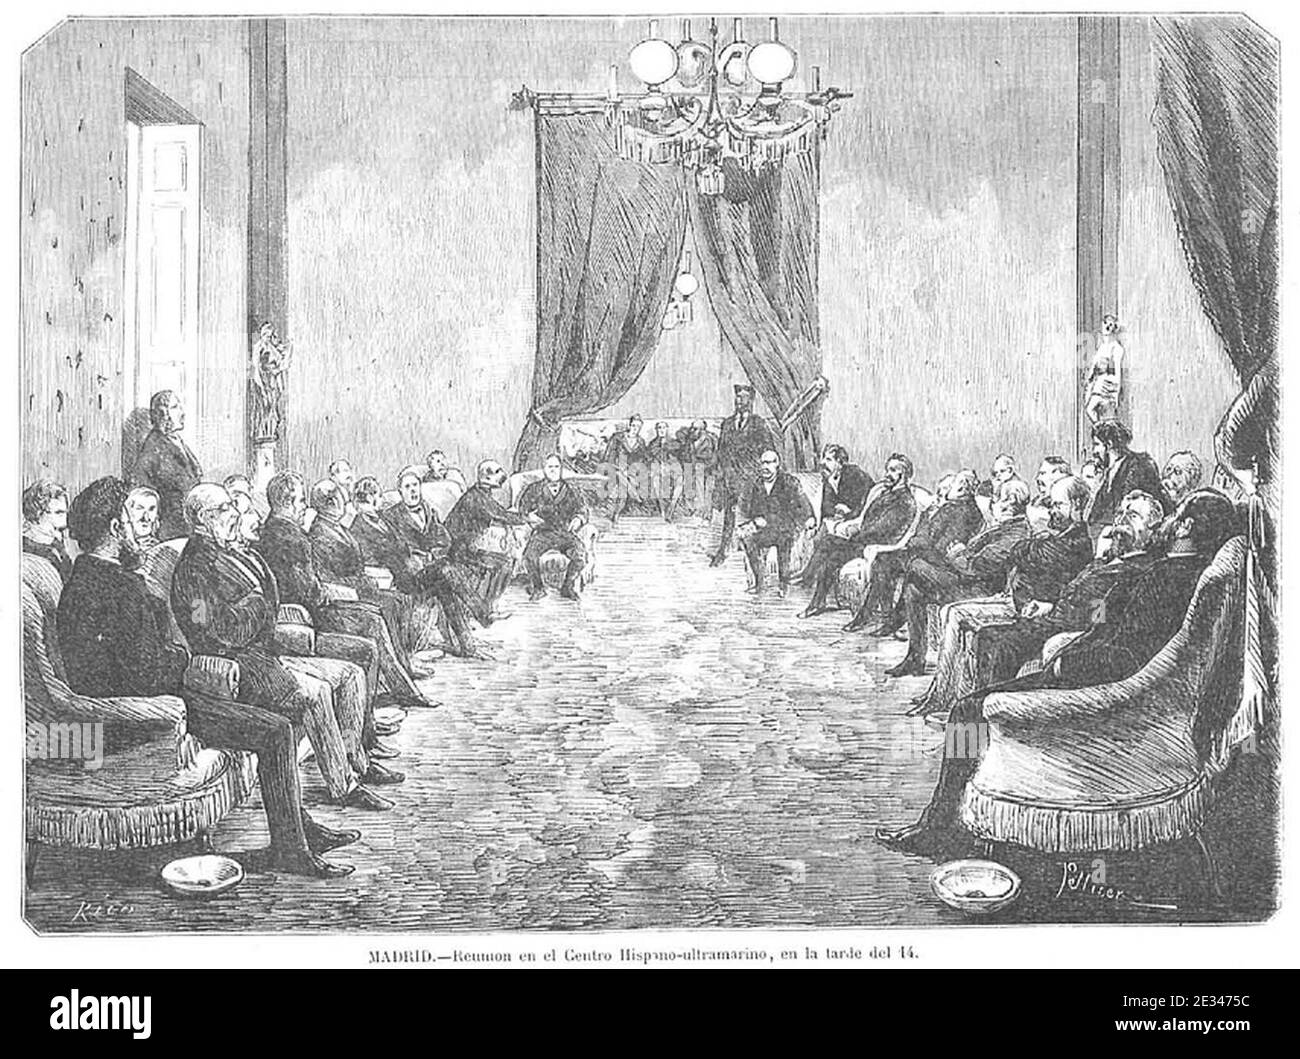 Madrid, reunión en el Centro Hispano-ultramarino, en la tarde del 14 de diciembre de 1872, de Pellicer. Stock Photo